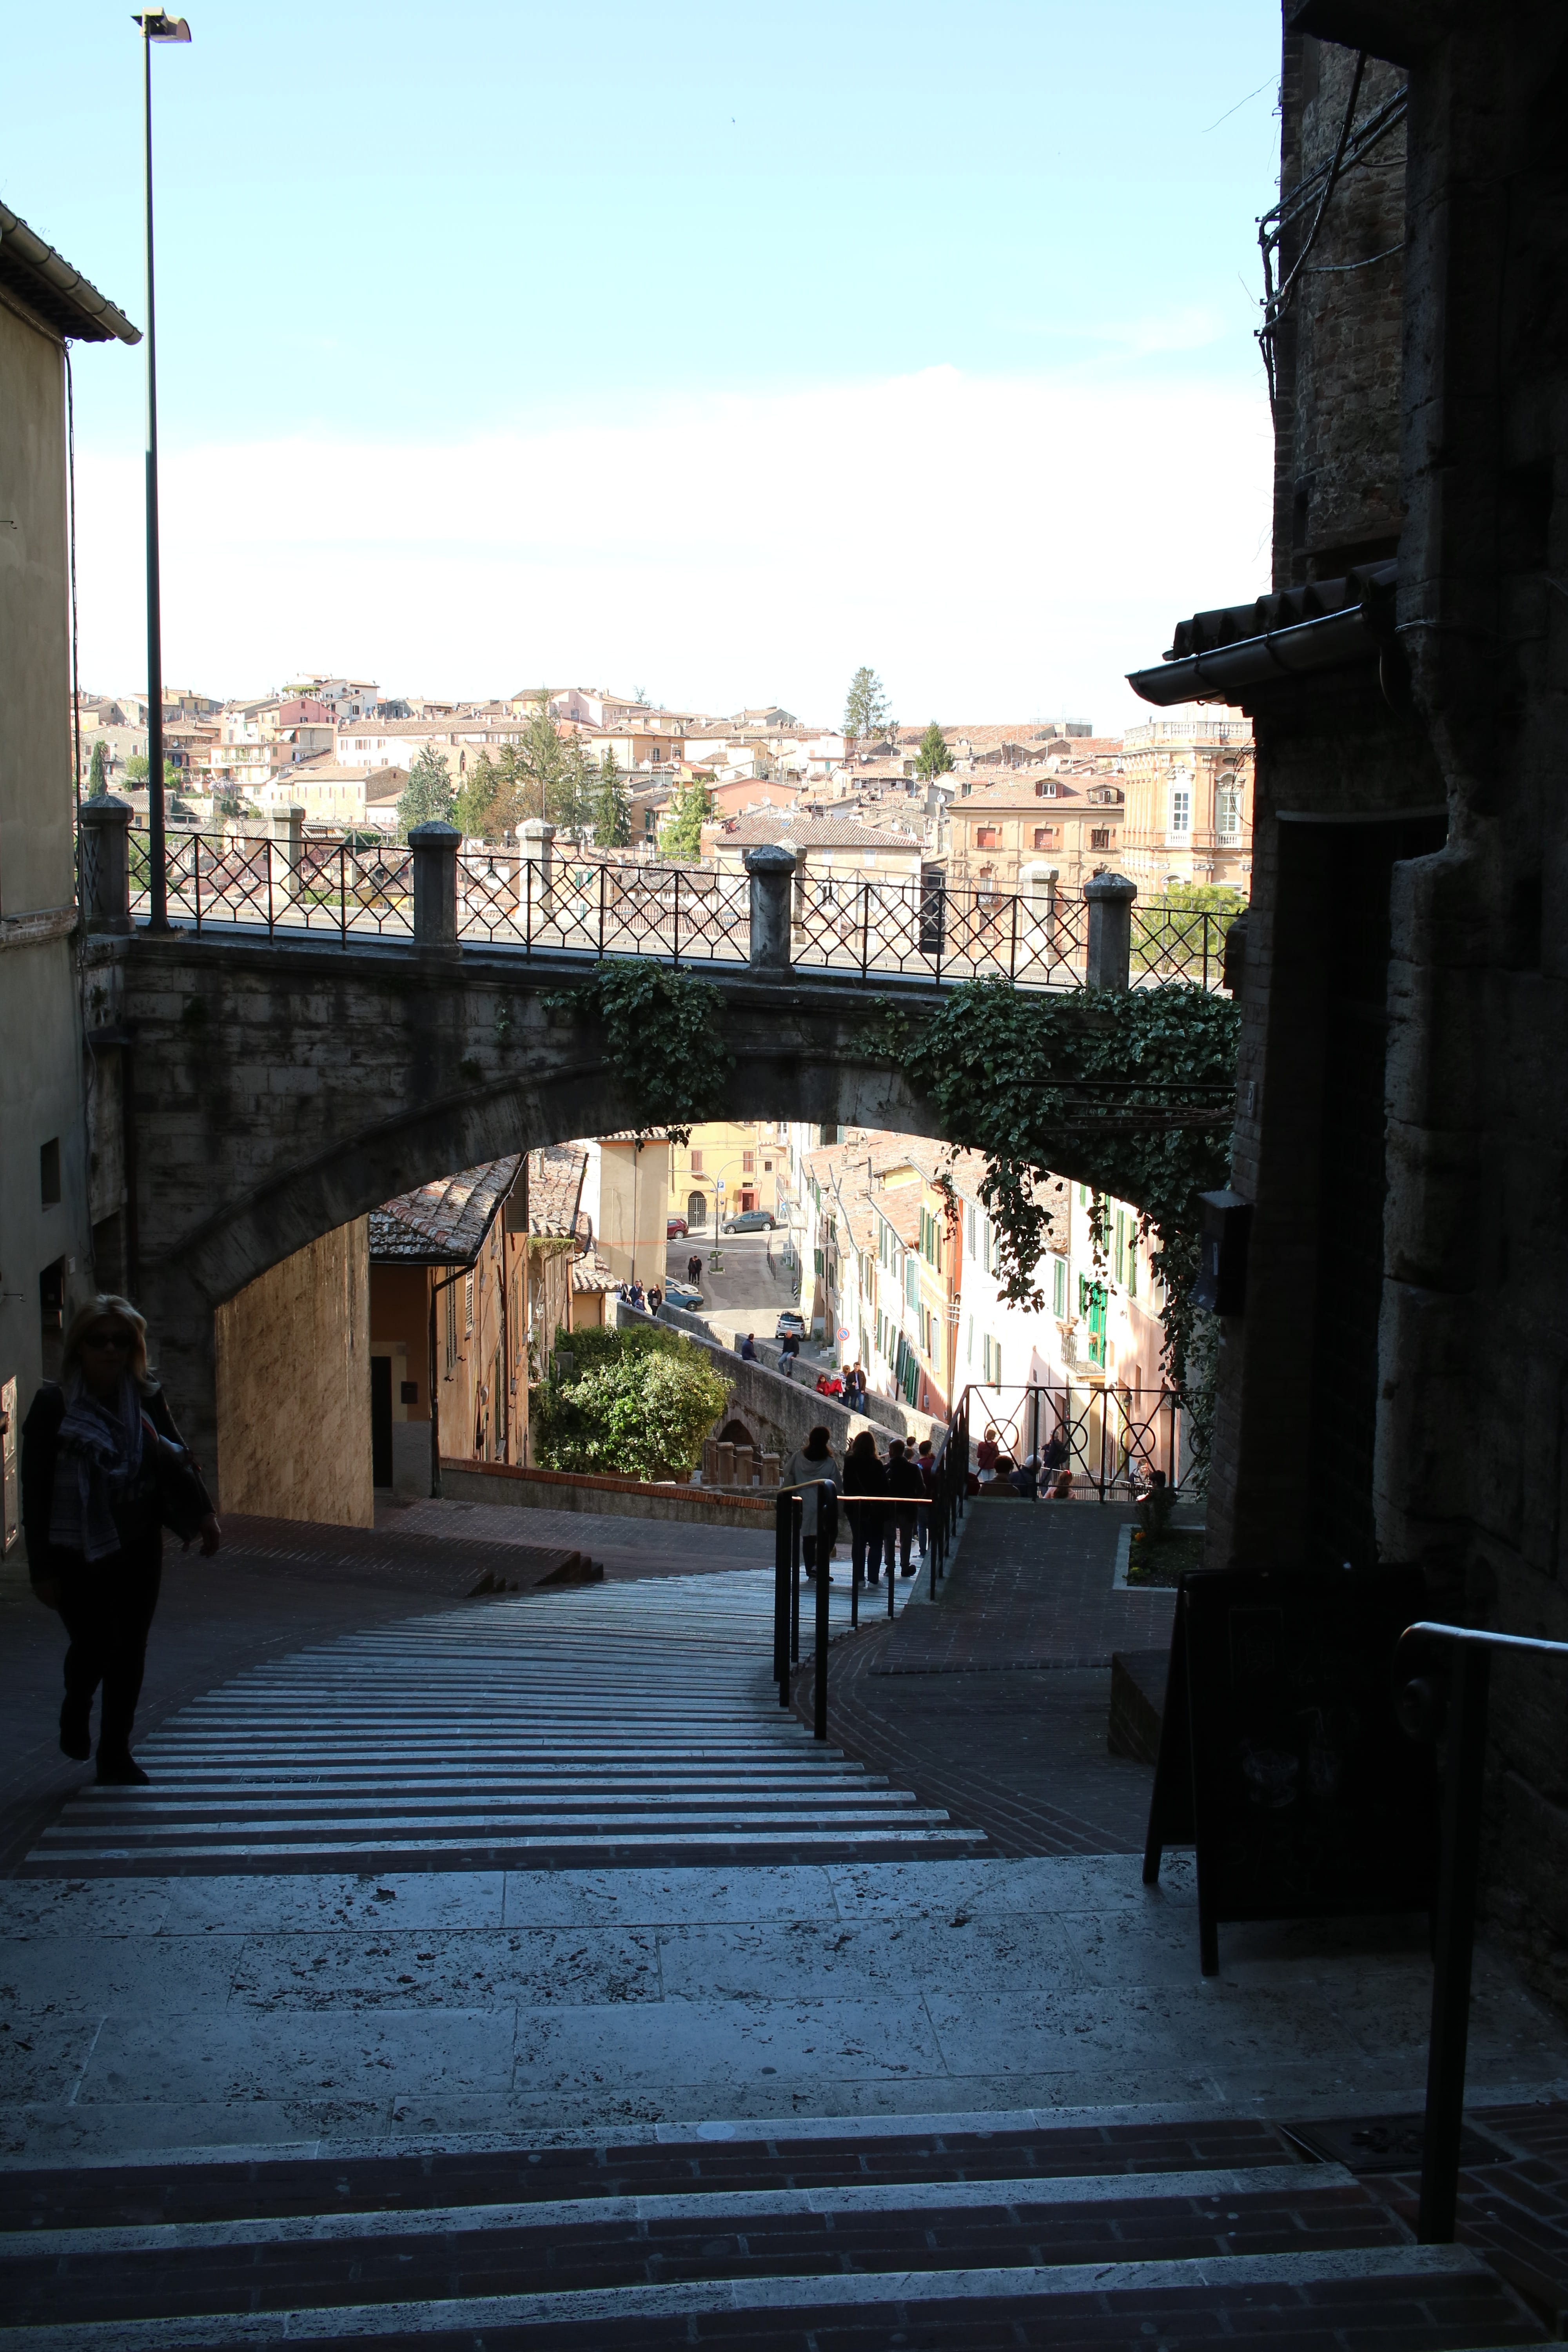 Cosa vedere a Perugia in un giorno: info utili per organizzare una gita + aneddoto bonus